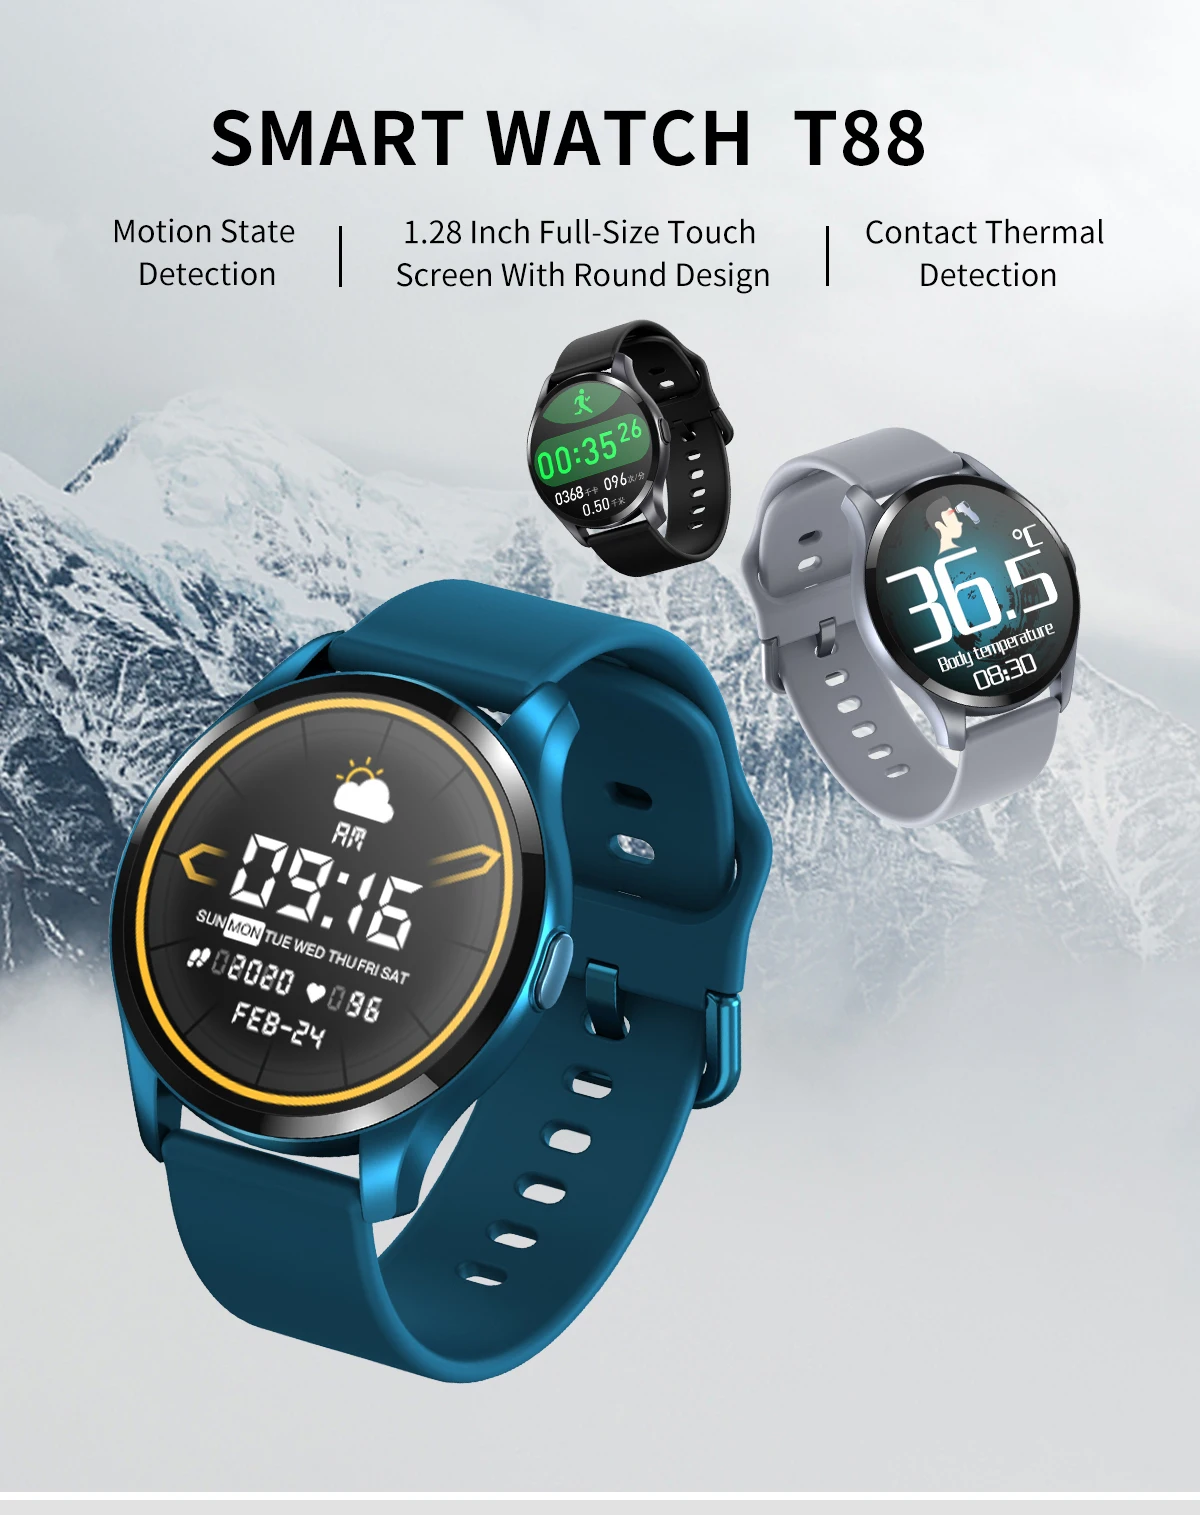 スマートウォッチtスマートウォッチカスタム壁紙スポーツ時計体温回転ボタン Buy A1スマートウォッチ価格 技術スマートウォッチ スマート腕時計子供 Product On Alibaba Com